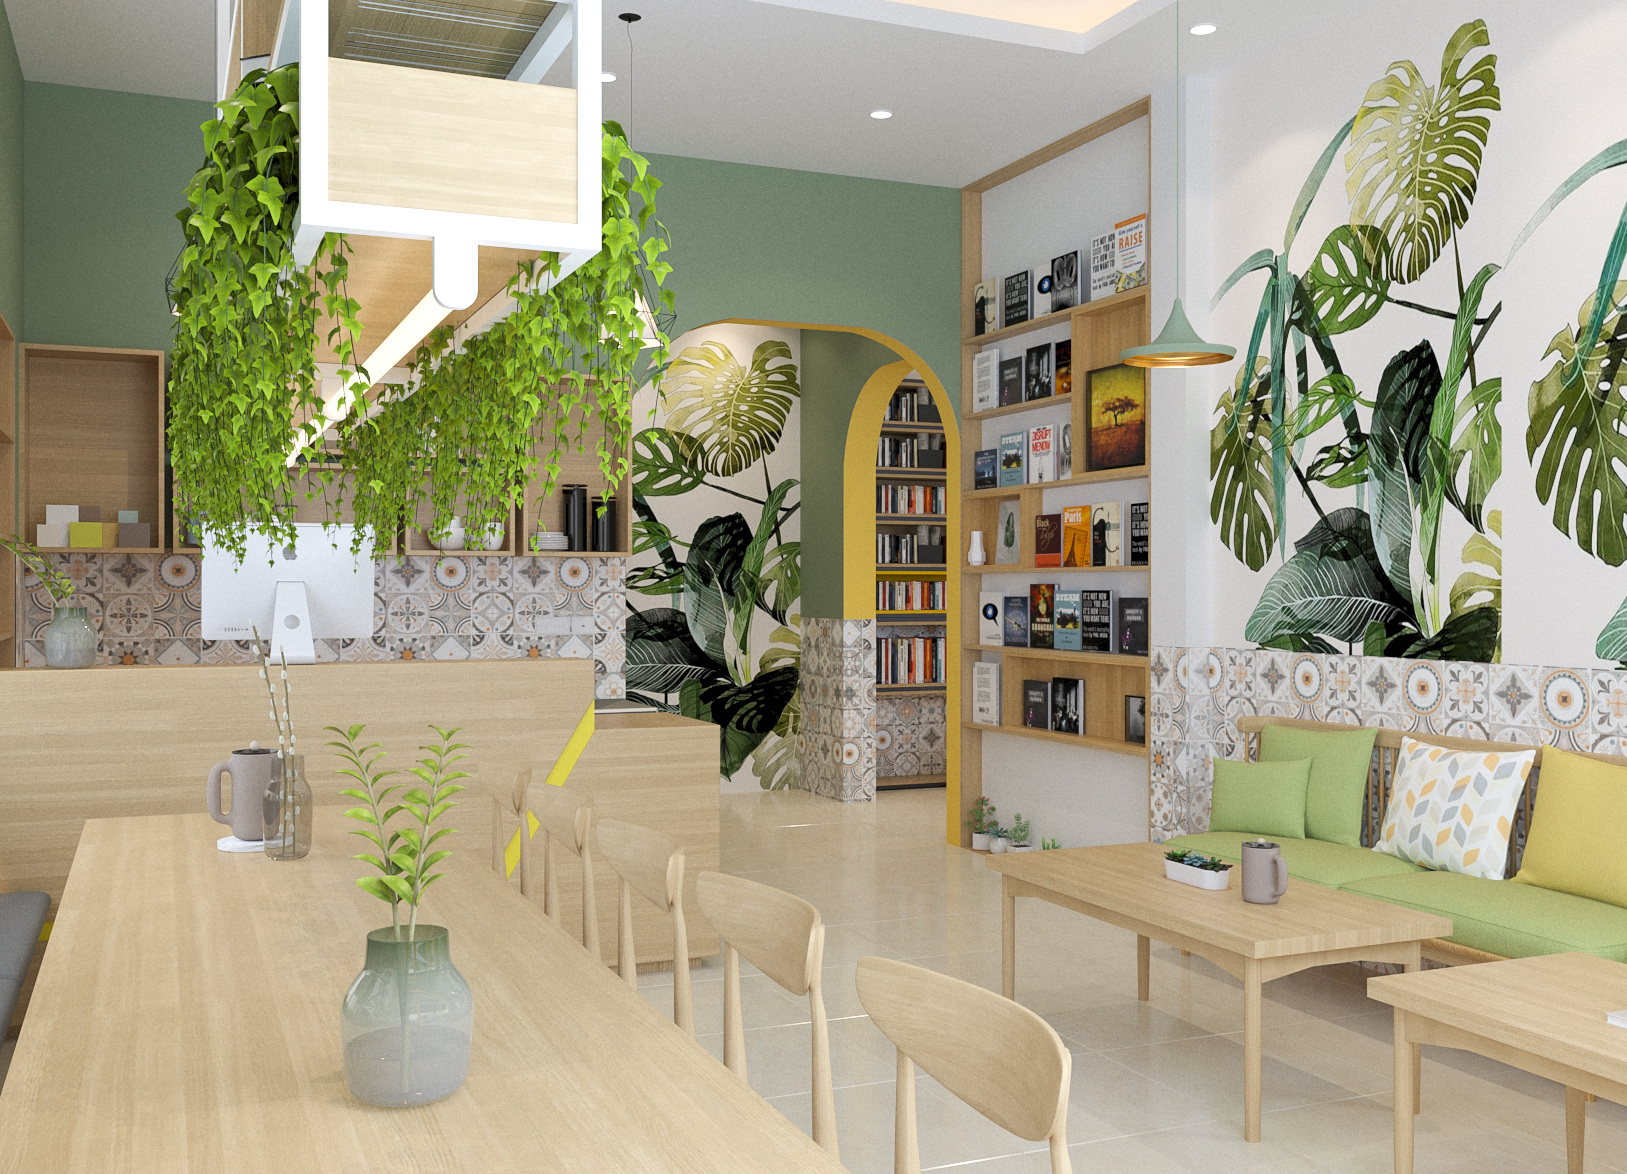 Thiết kế nội thất Cafe tại Hà Nội coffee Phùng Khoang 1615186977 0